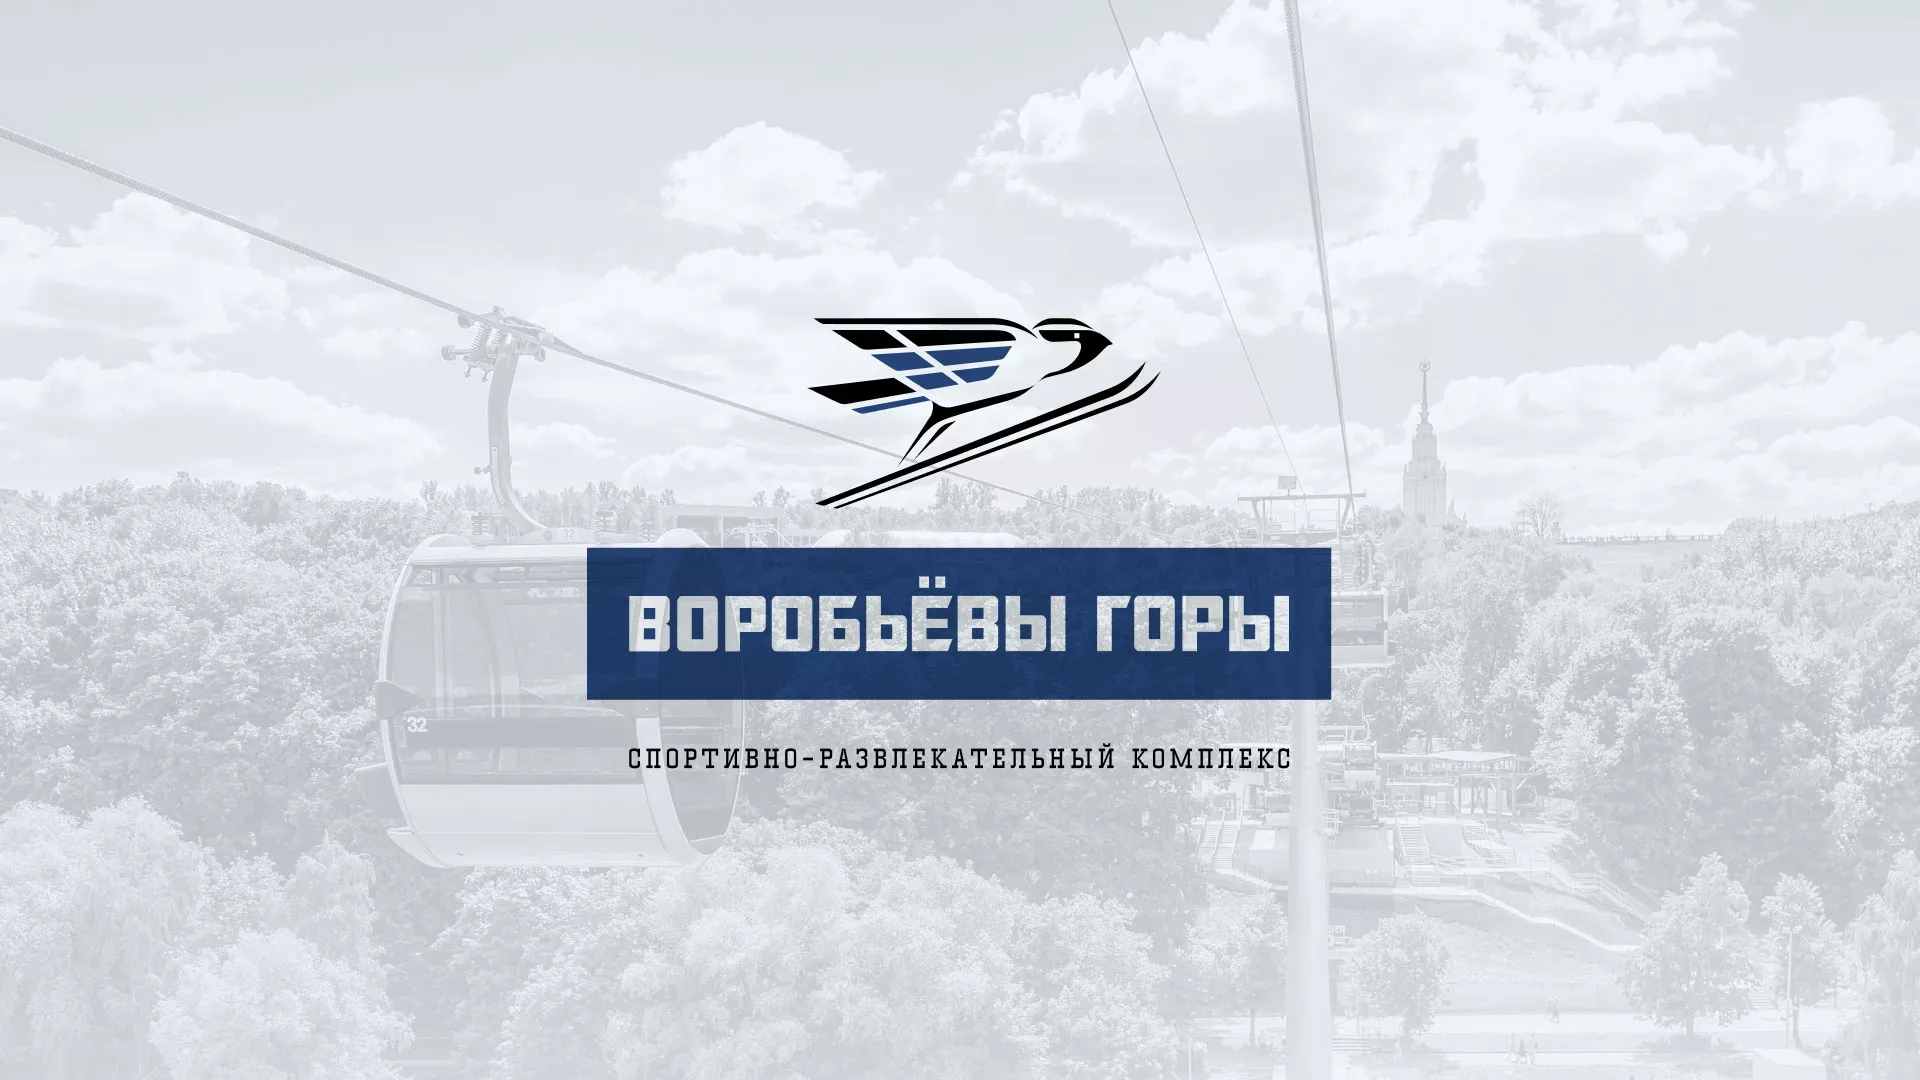 Разработка сайта в Светогорске для спортивно-развлекательного комплекса «Воробьёвы горы»